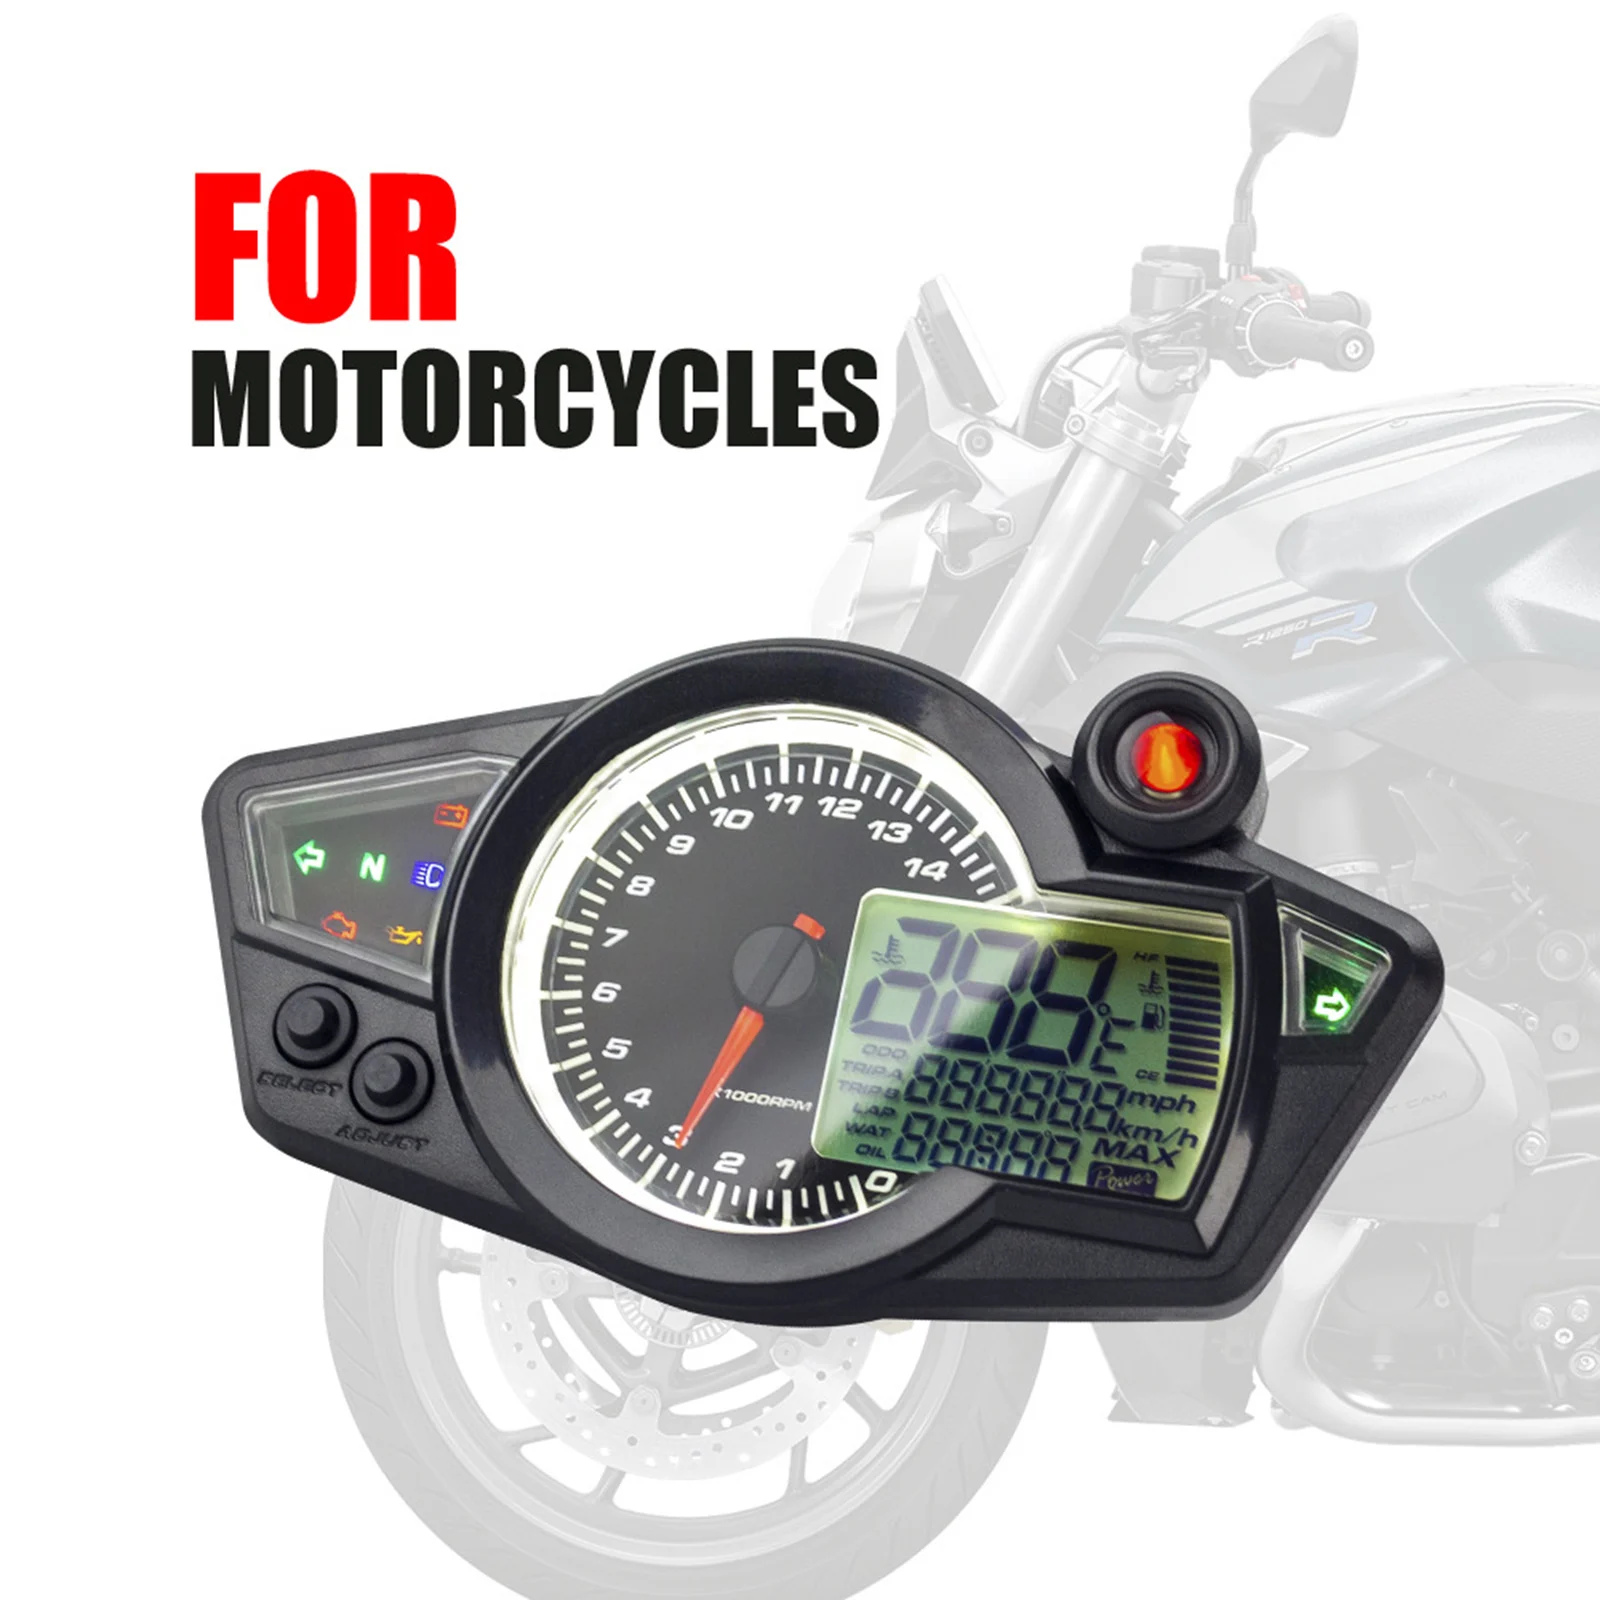 Motorcycle LCD Speedometer Gauge Universal LCD Display Black Speed Gauge Odometer Fit for Motorbikes Supplies Moto Accessories